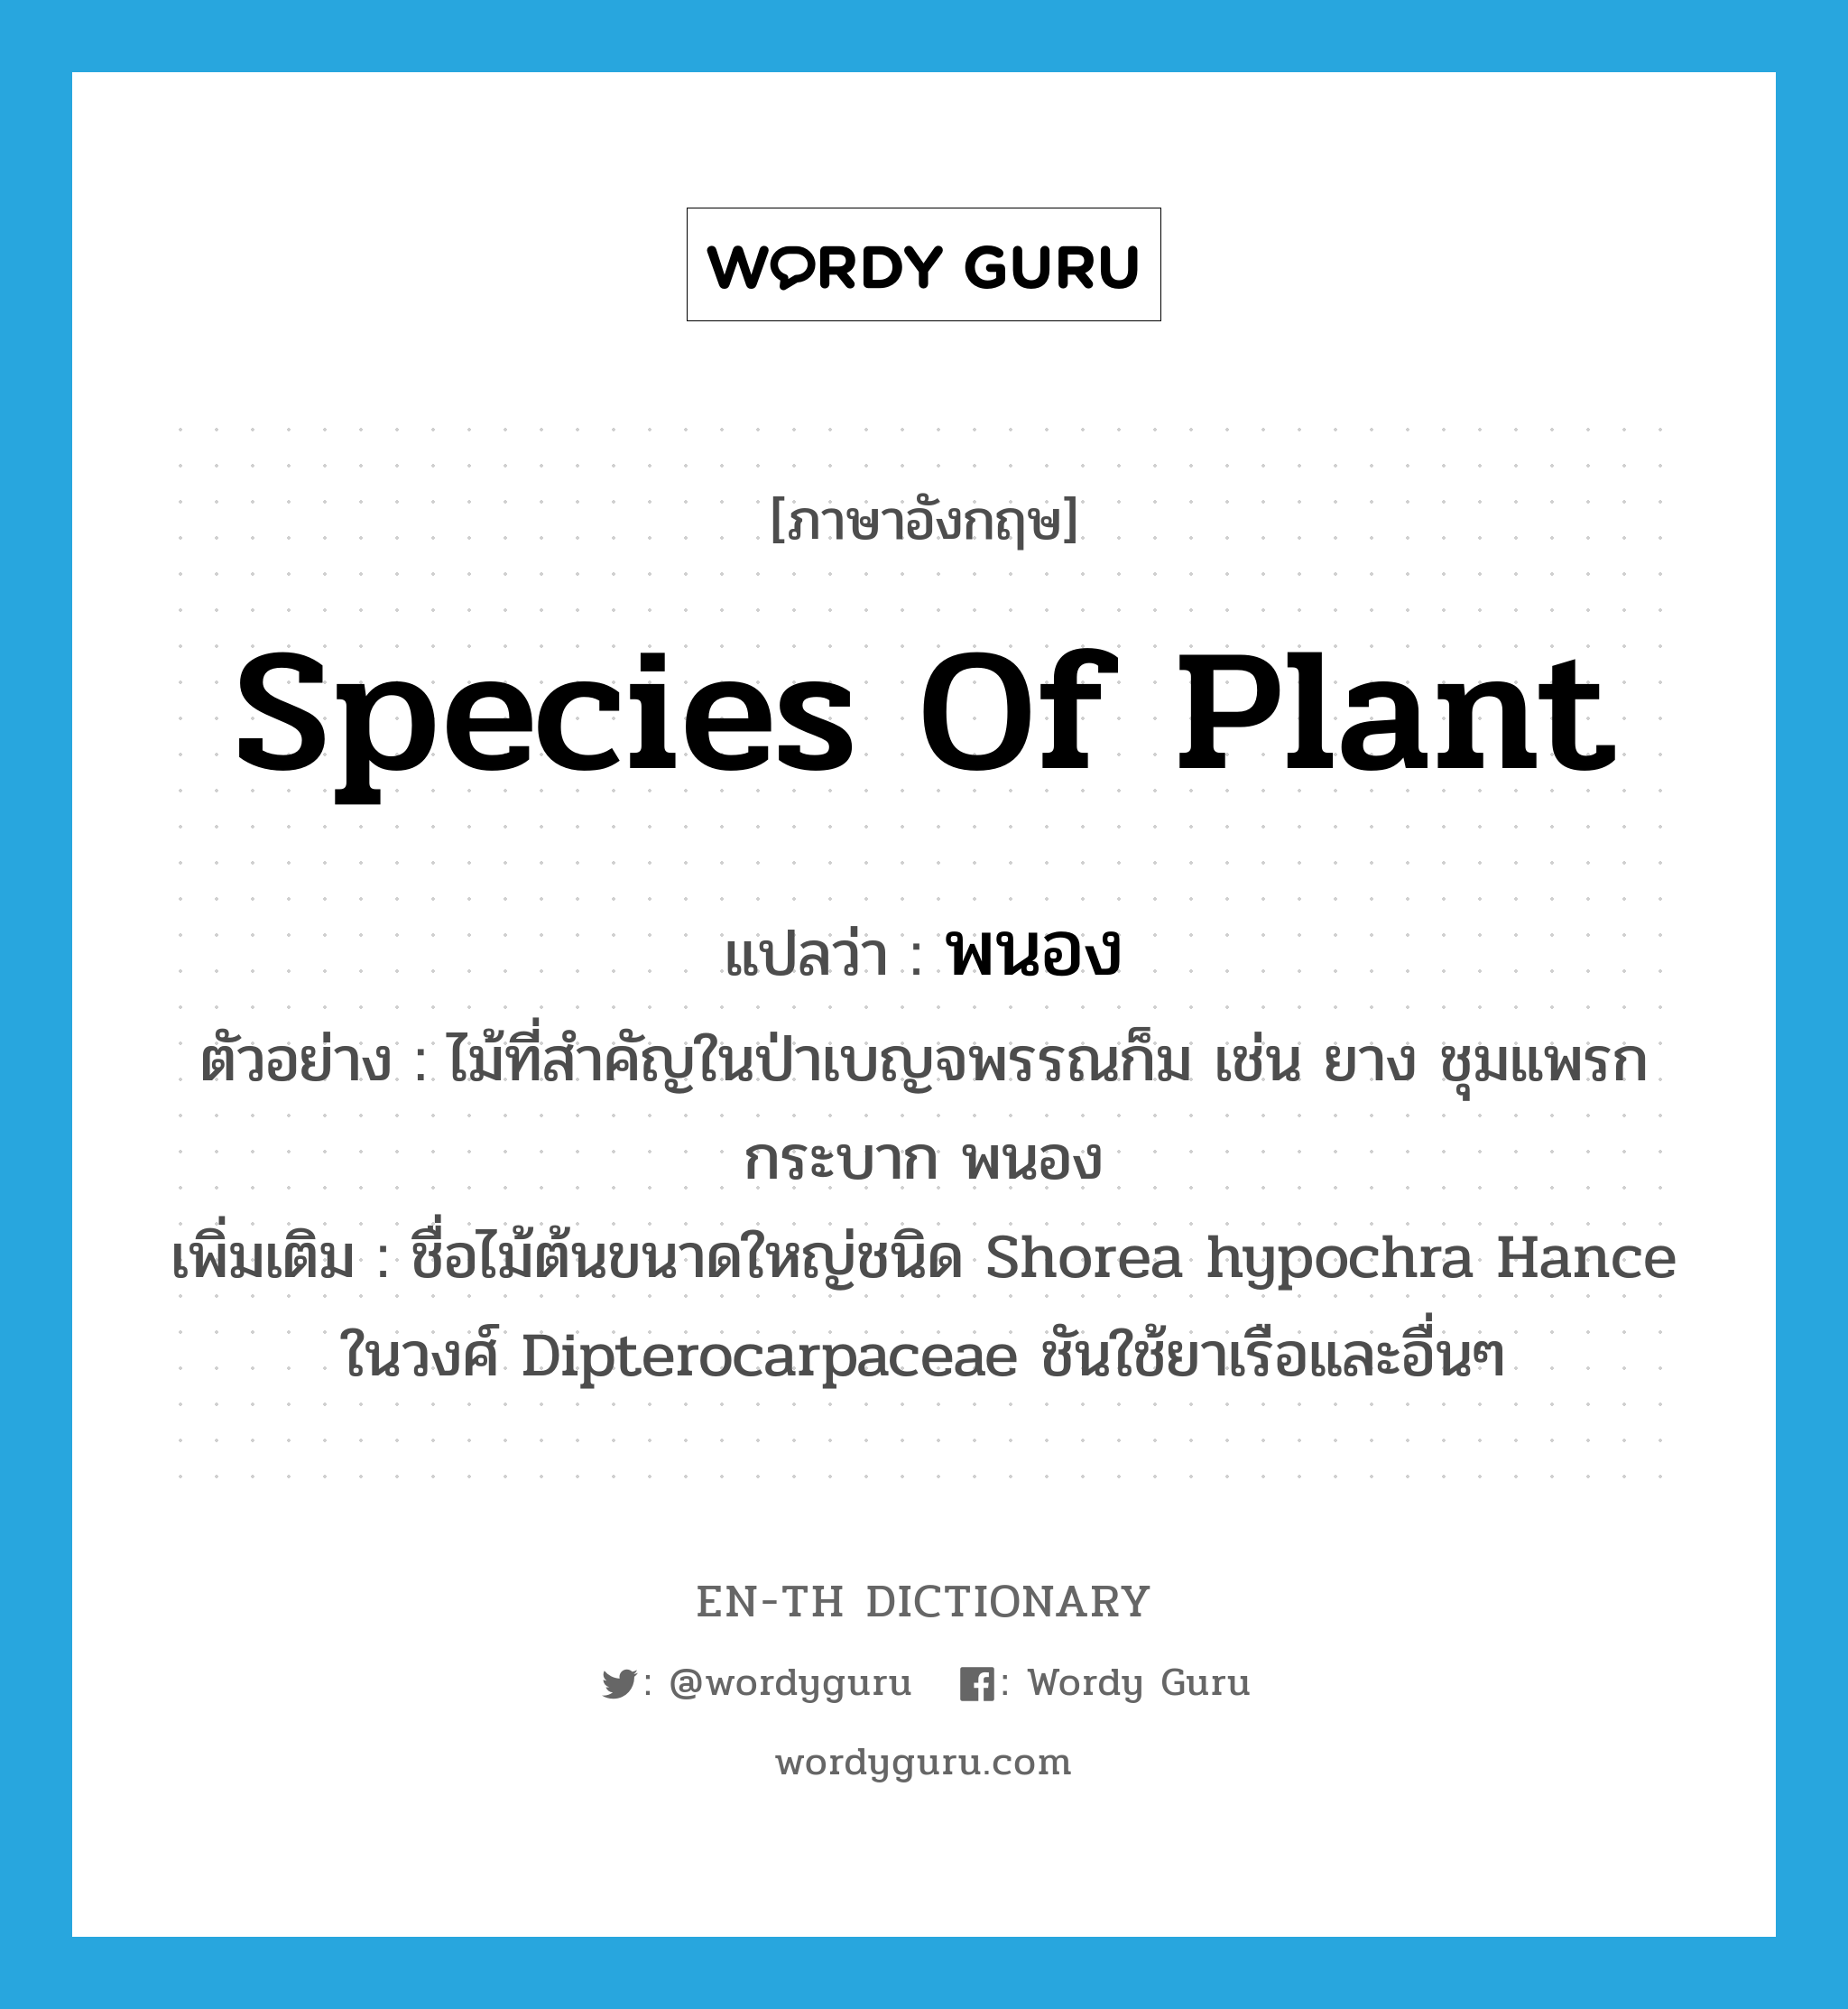 species of plant แปลว่า?, คำศัพท์ภาษาอังกฤษ species of plant แปลว่า พนอง ประเภท N ตัวอย่าง ไม้ที่สำคัญในป่าเบญจพรรณก็ม เช่น ยาง ชุมแพรก กระบาก พนอง เพิ่มเติม ชื่อไม้ต้นขนาดใหญ่ชนิด Shorea hypochra Hance ในวงศ์ Dipterocarpaceae ชันใช้ยาเรือและอื่นๆ หมวด N